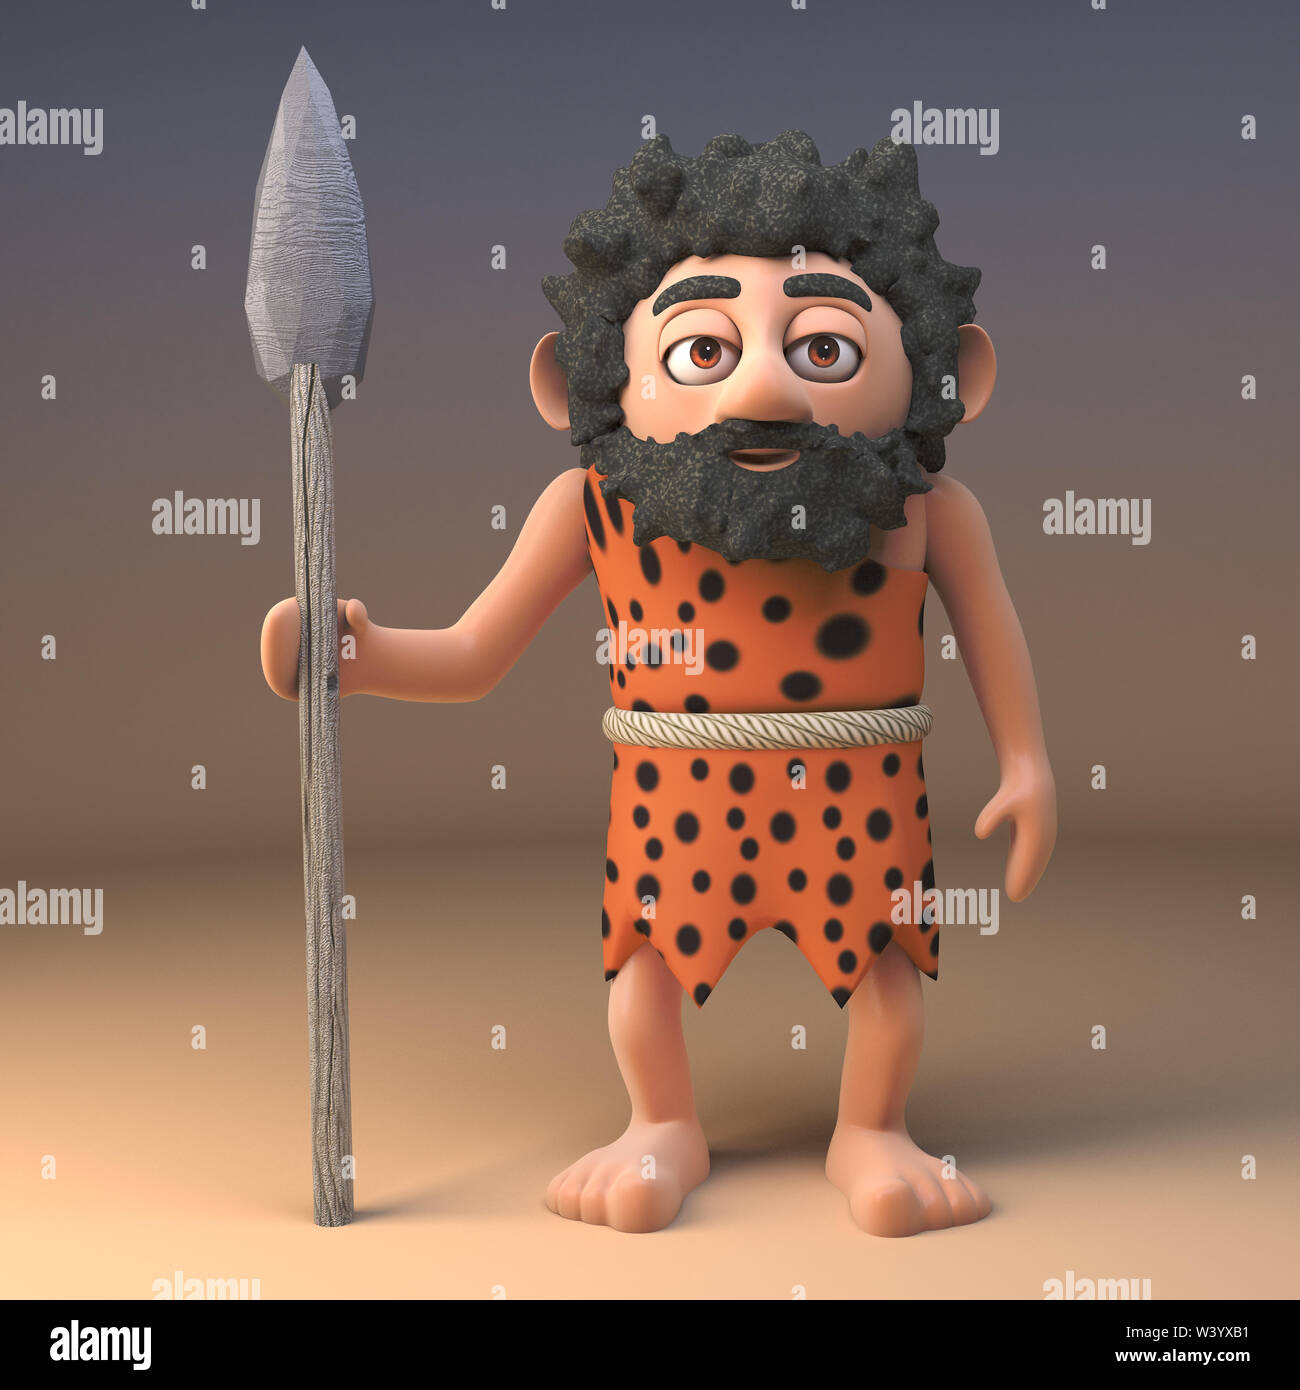 Caveman in animali da pelliccia con una lunga barba stand con la sua lancia come un grande cacciatore preistorico, 3D render illustrazione Foto Stock